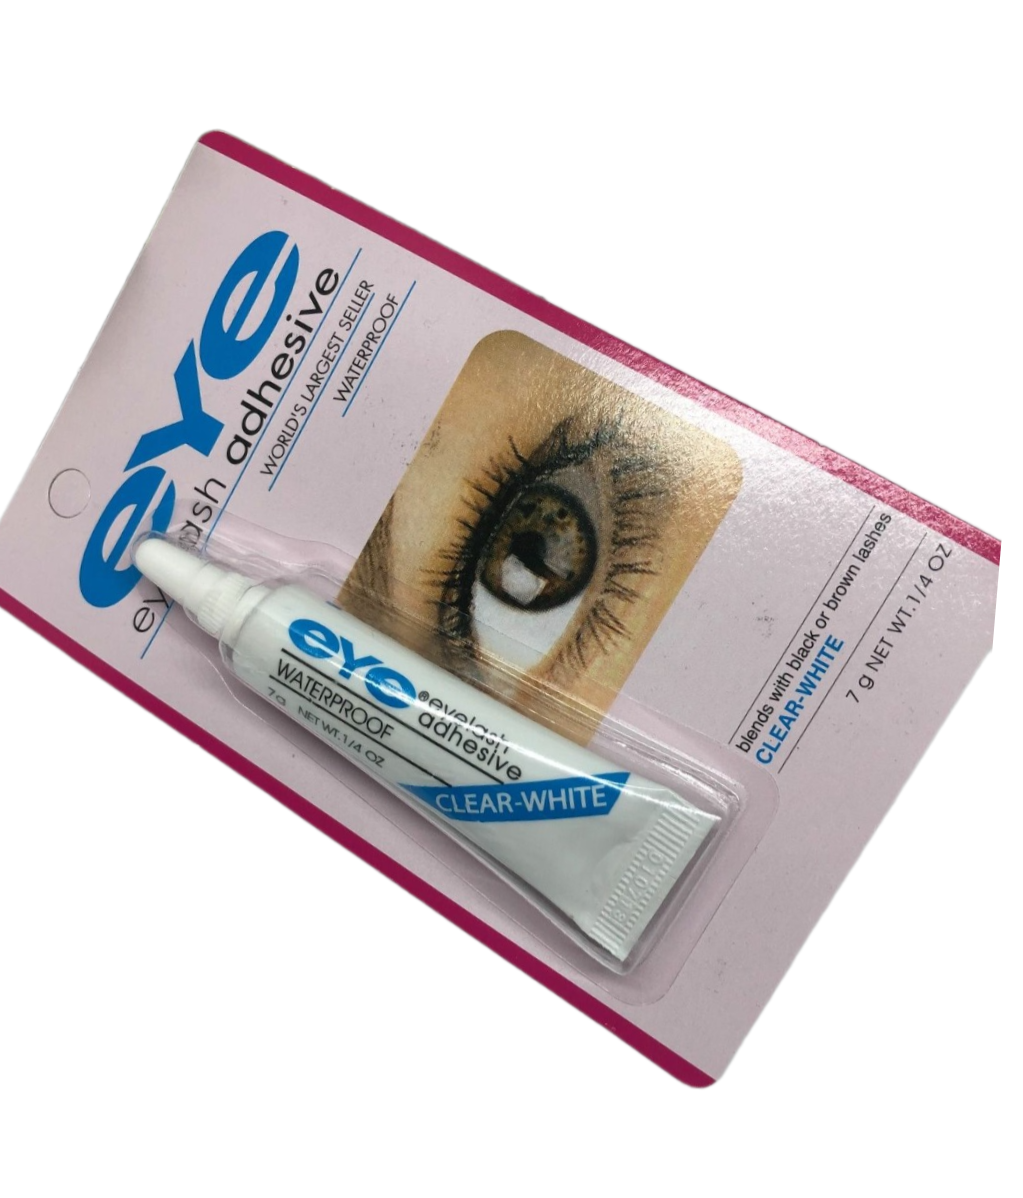 Eye eyelash False Eyelashes Strong Waterproof Adhesive Glue 7g Tube - White Glue